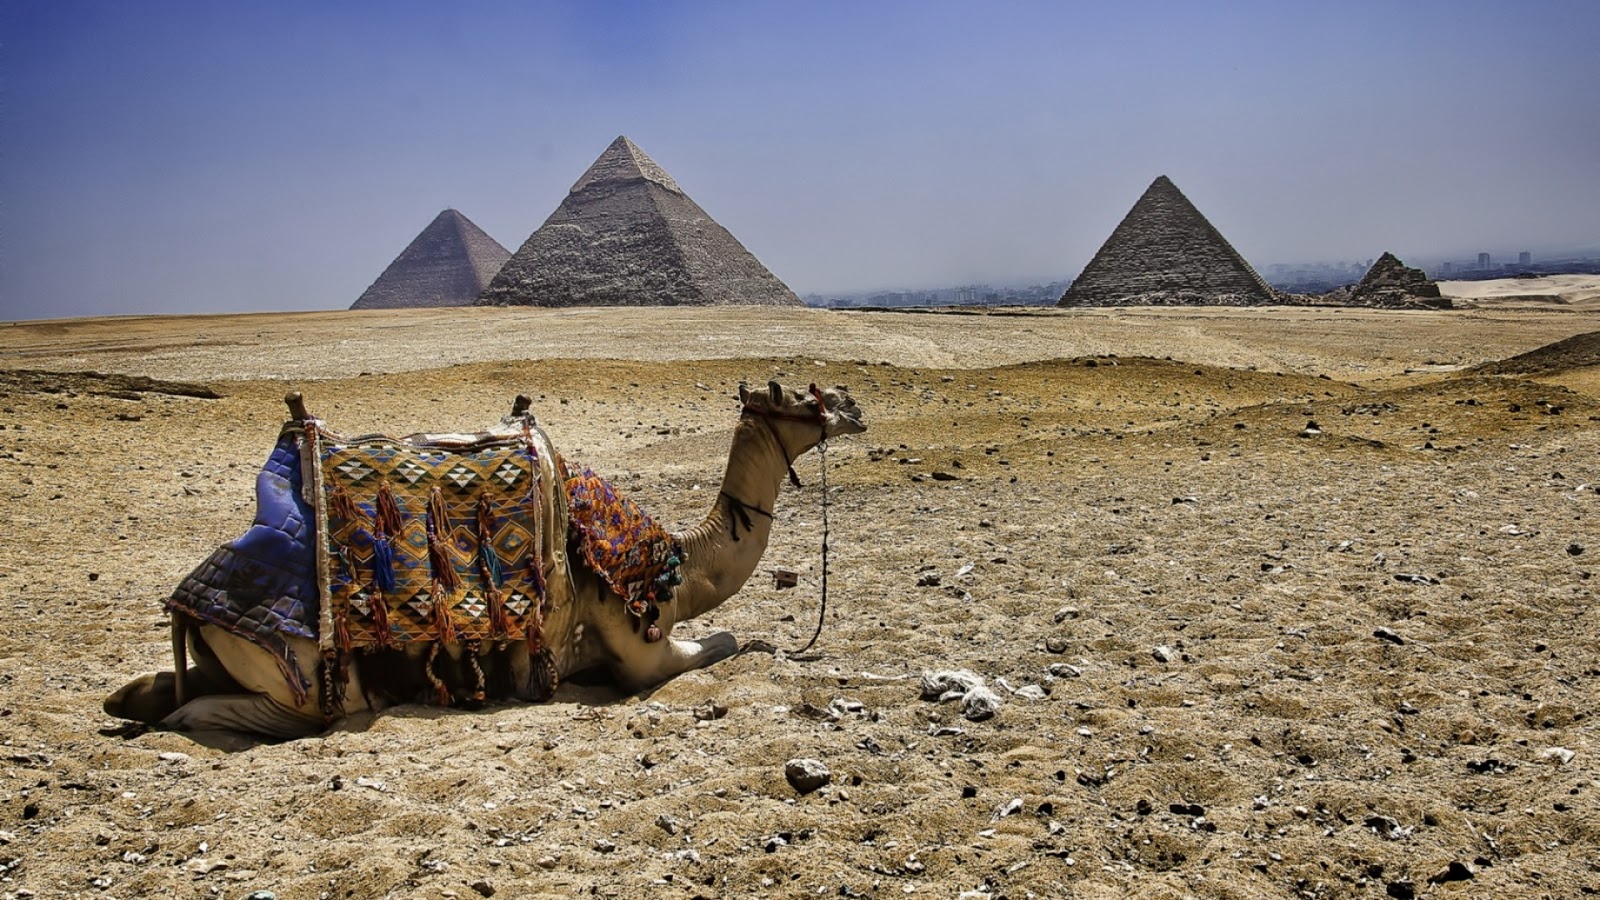 camel_pyramids_egypt_77063_1920x1080